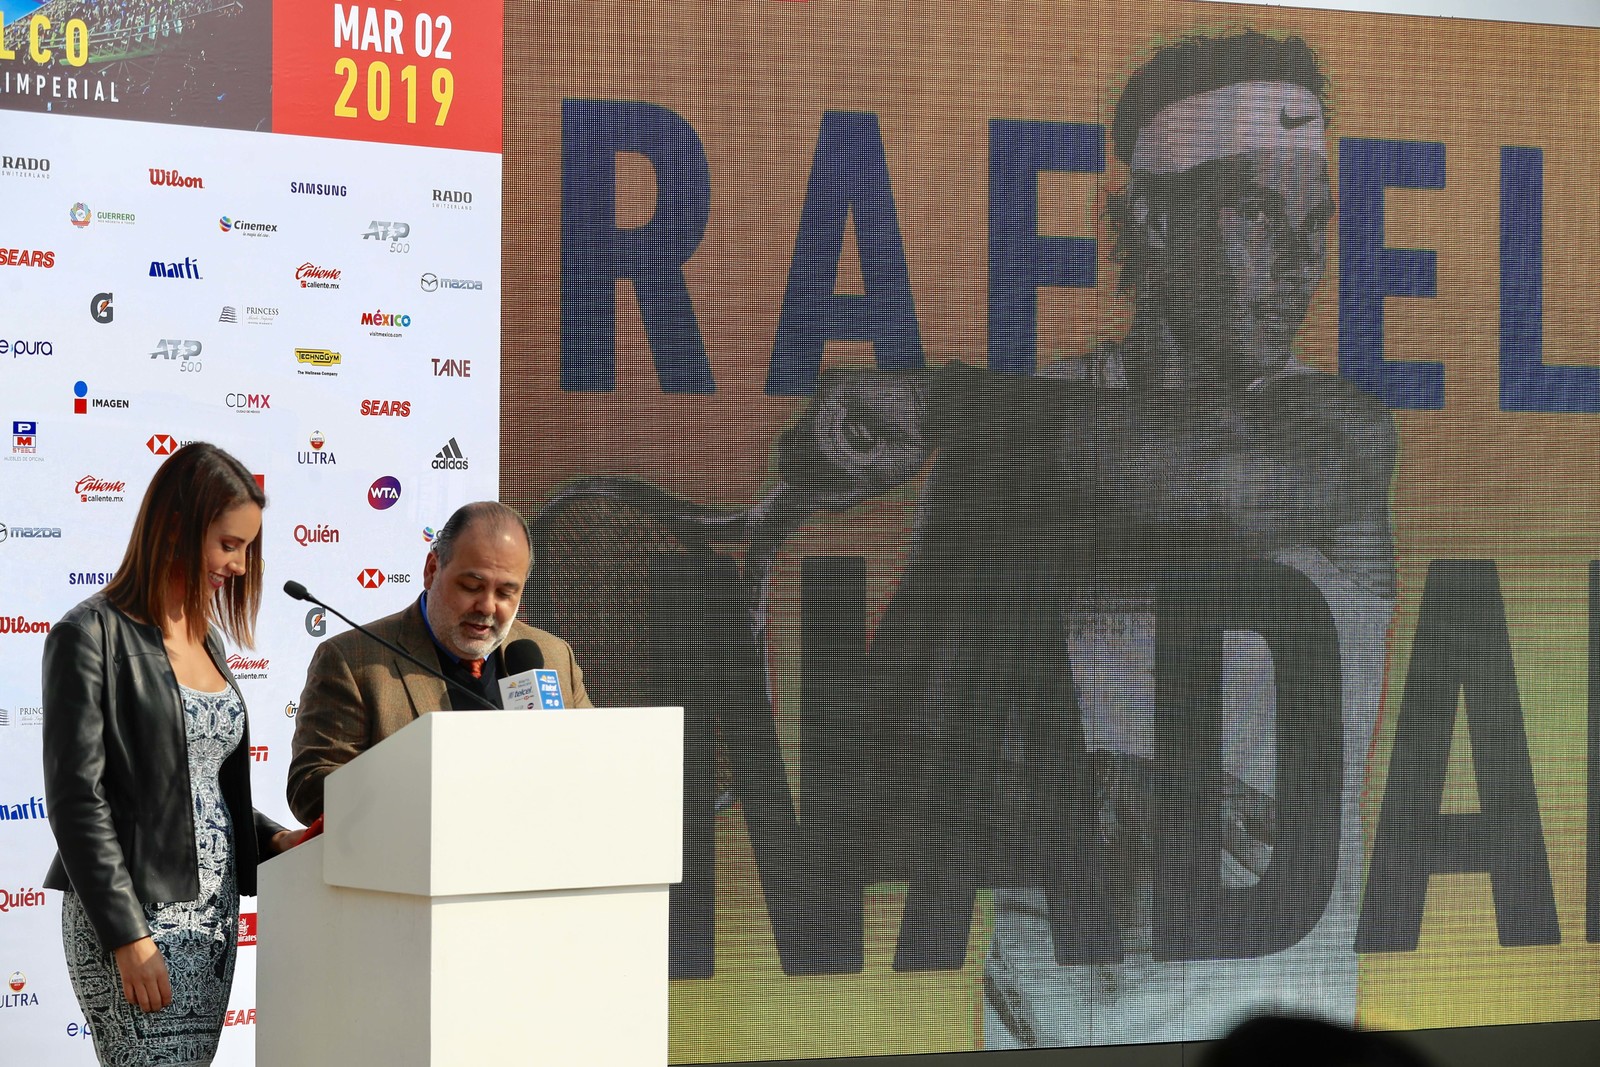 Raúl Zurutuza, director del torneo, encabezó una conferencia de prensa para ofrecer detalles sobre este campeonato, que se disputará del 25 de febrero al 2 de marzo, incluyendo la participación del Rafael Nadal.